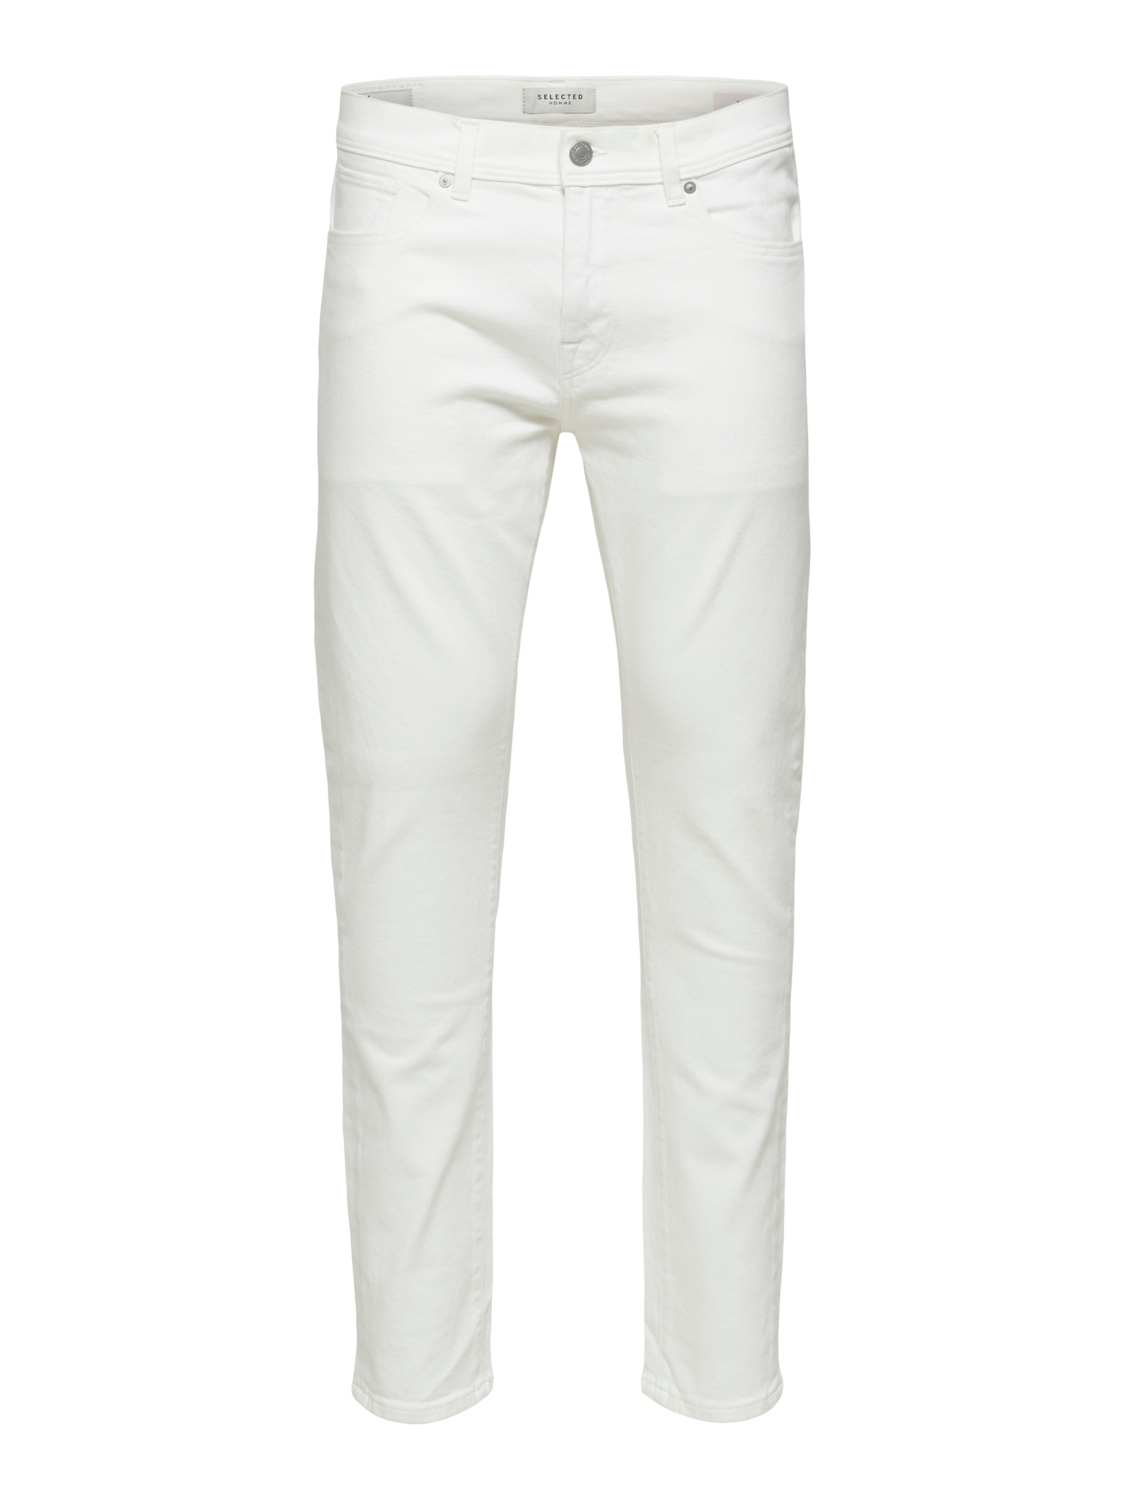 Mężczyźni Odzież SELECTED HOMME Jeansy LEON w kolorze Białym 